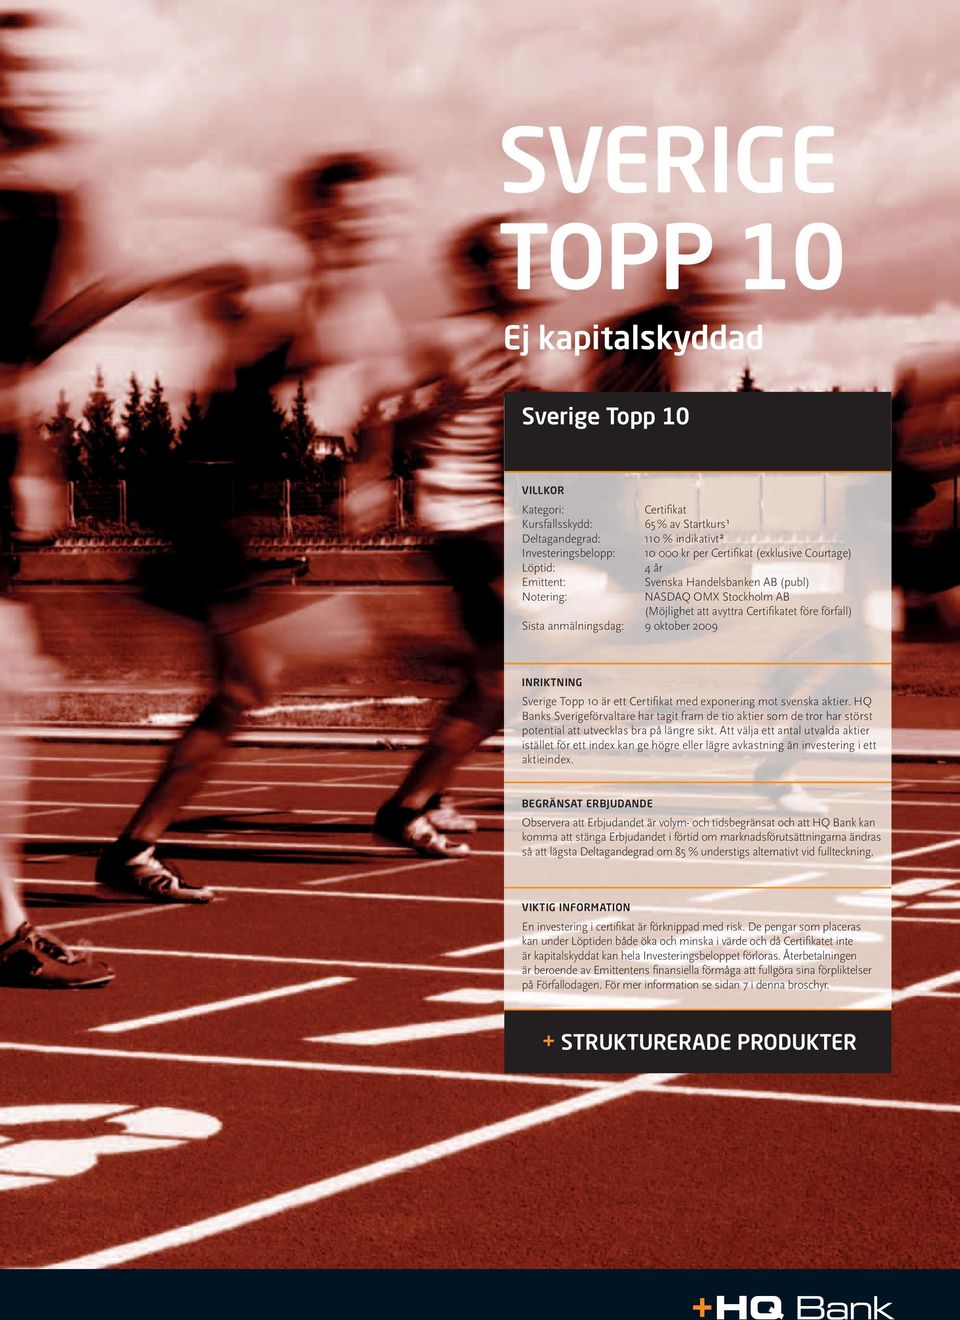 INRIKTNING Sverige Topp 10 är ett Certifi kat med exponering mot svenska aktier.